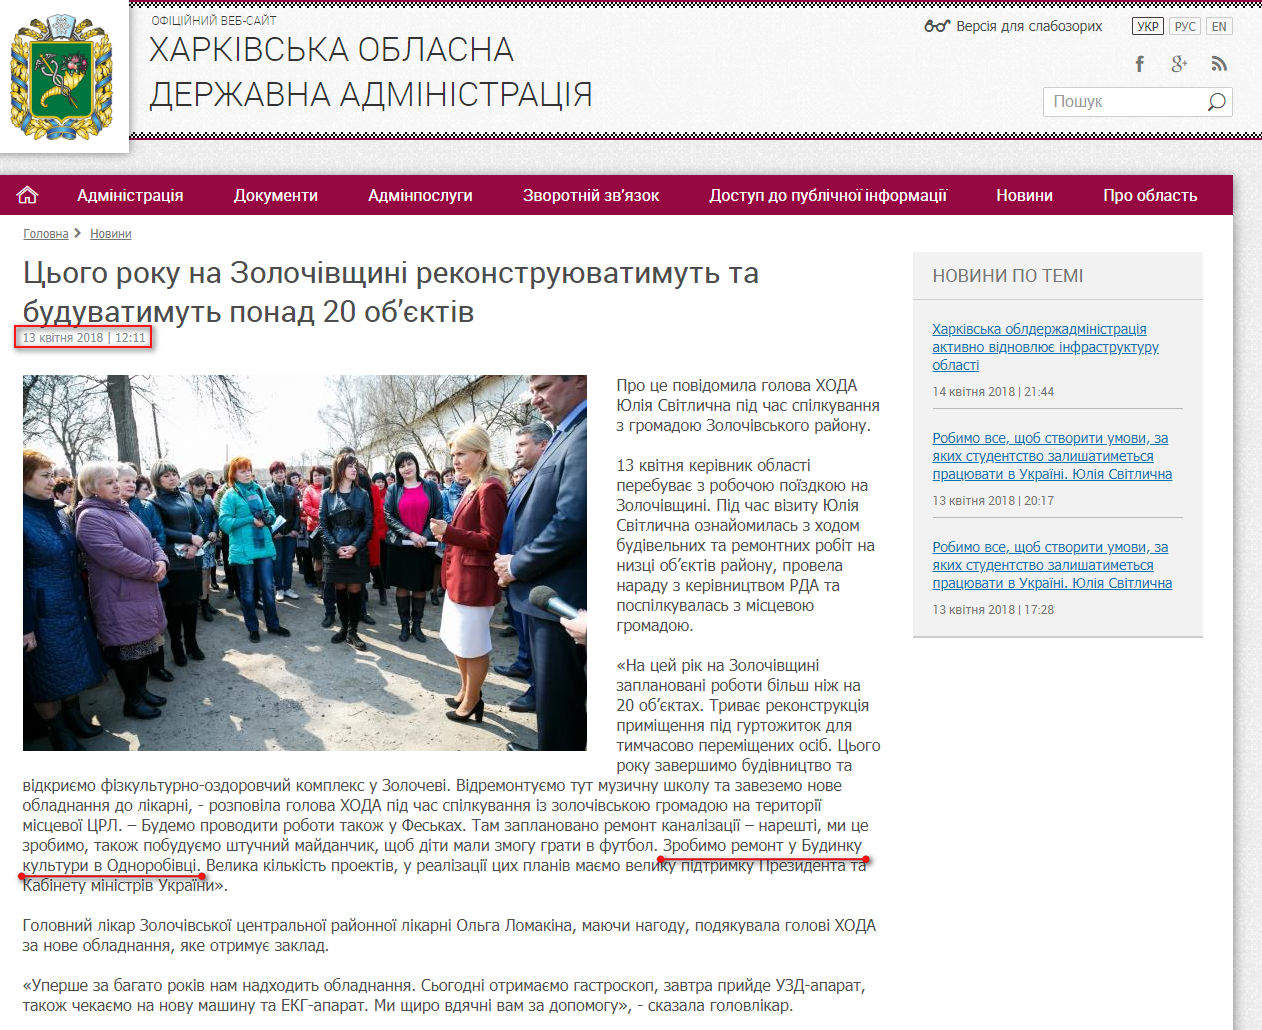 http://kharkivoda.gov.ua/news/92291